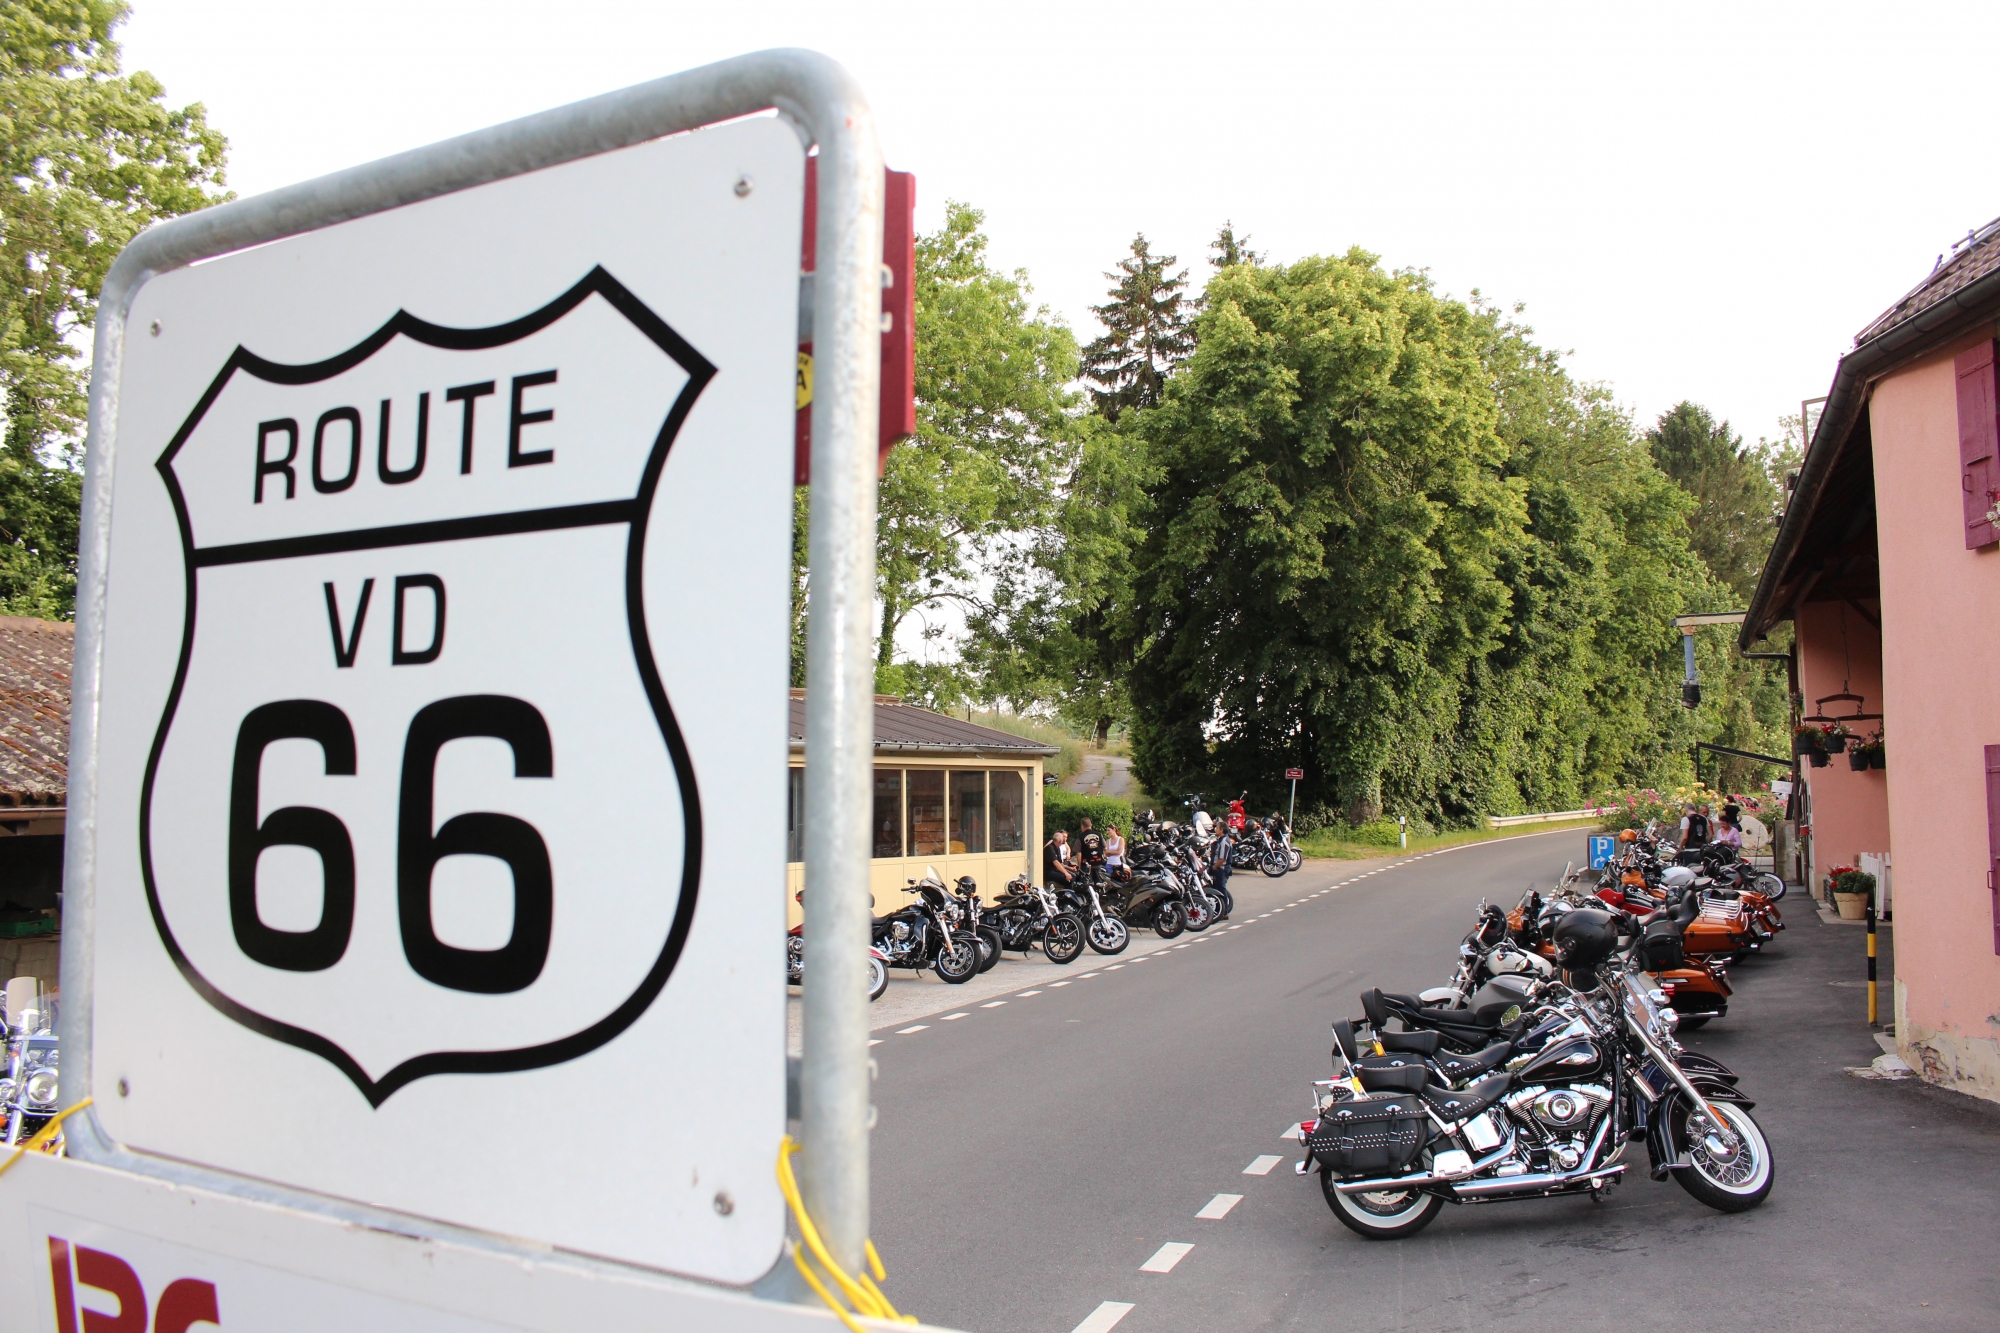 La route cantonale 66 attire les motards. En 2015, ils y ont même organisé une manifestation.